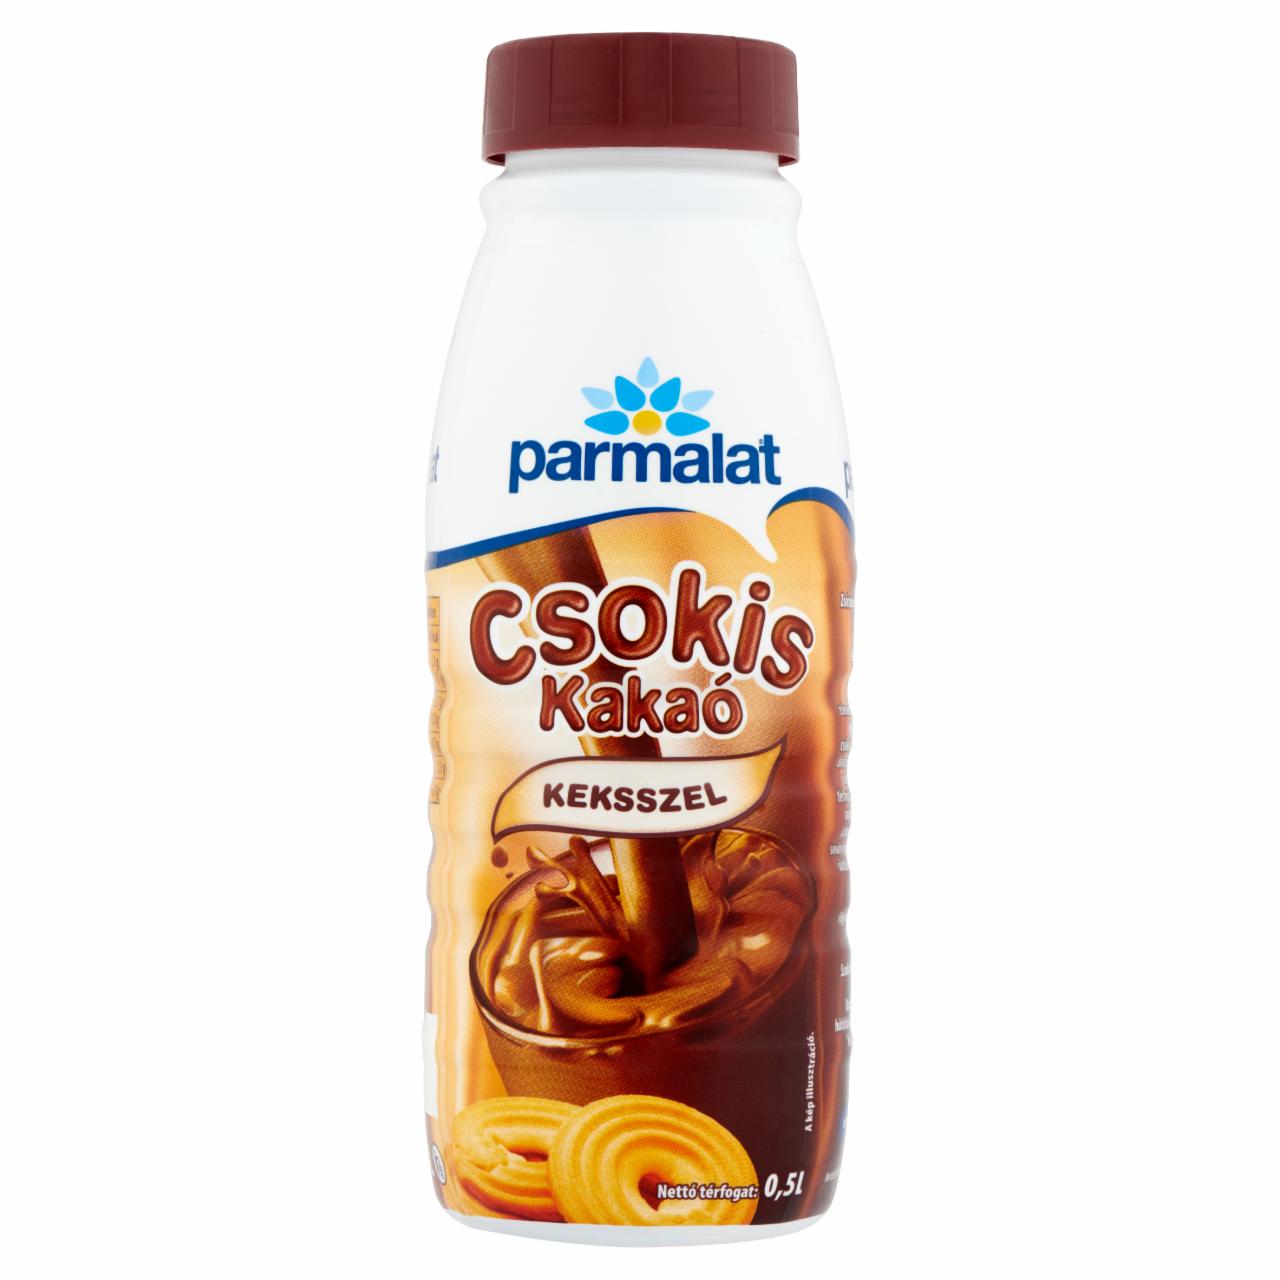 Képek - Parmalat csokis kakaó keksszel 0,5 l